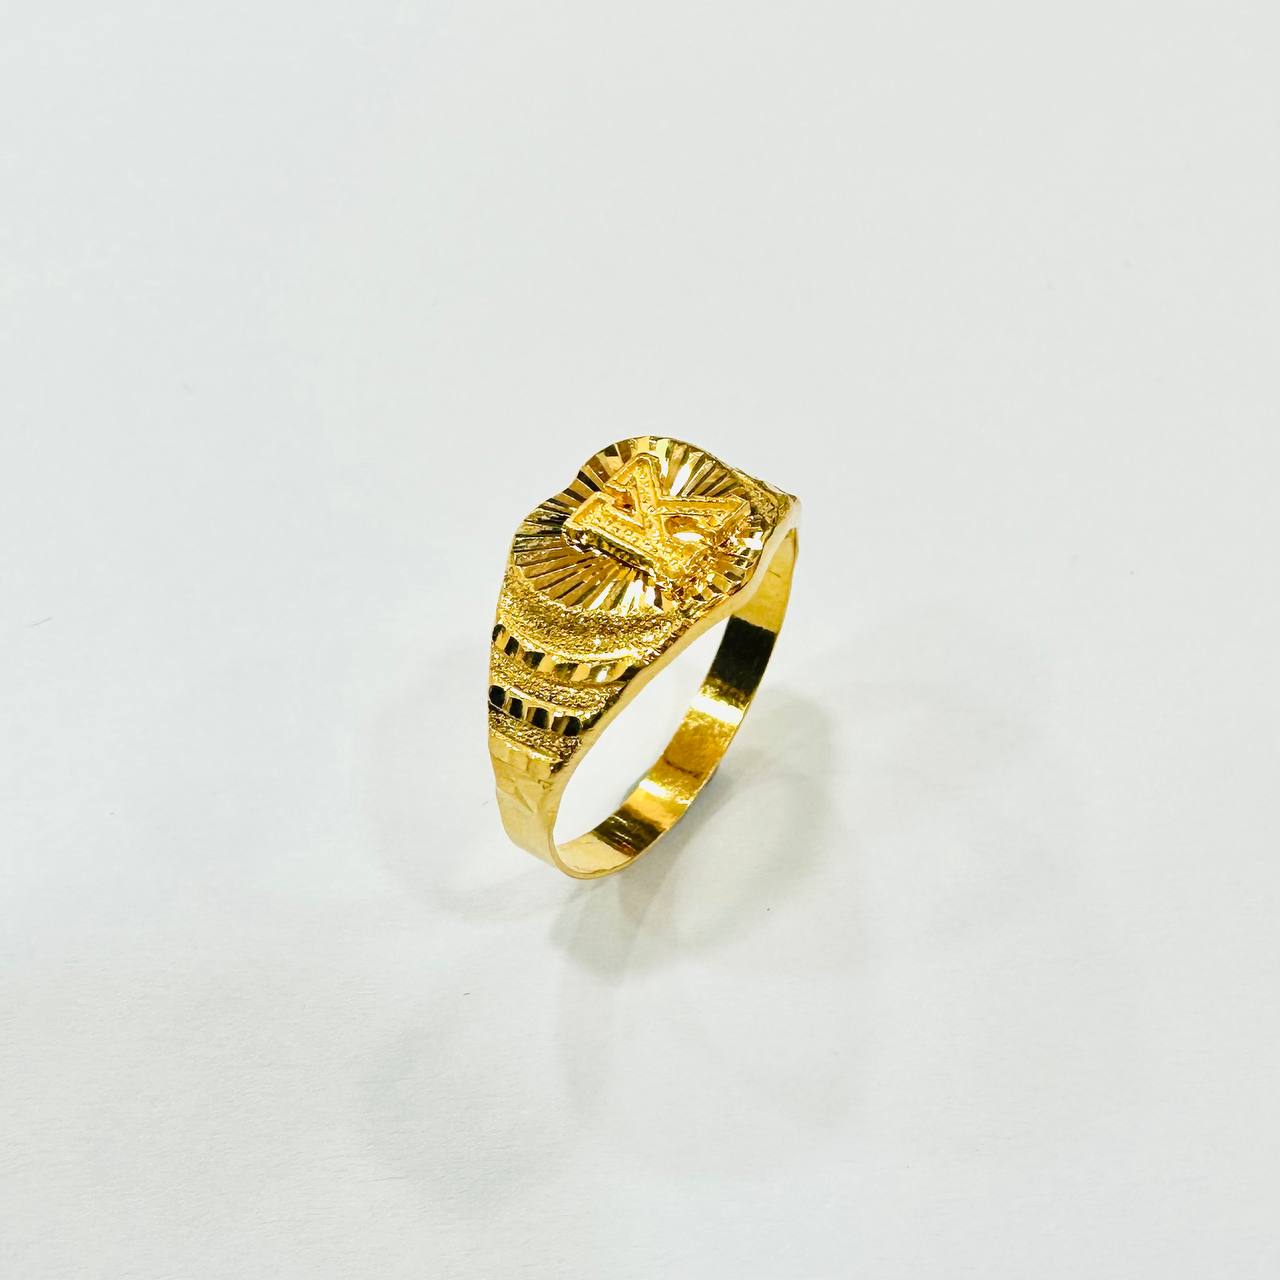 22k / 916 Gold Alphabet Ring Lightweight-916 gold-Best Gold Shop